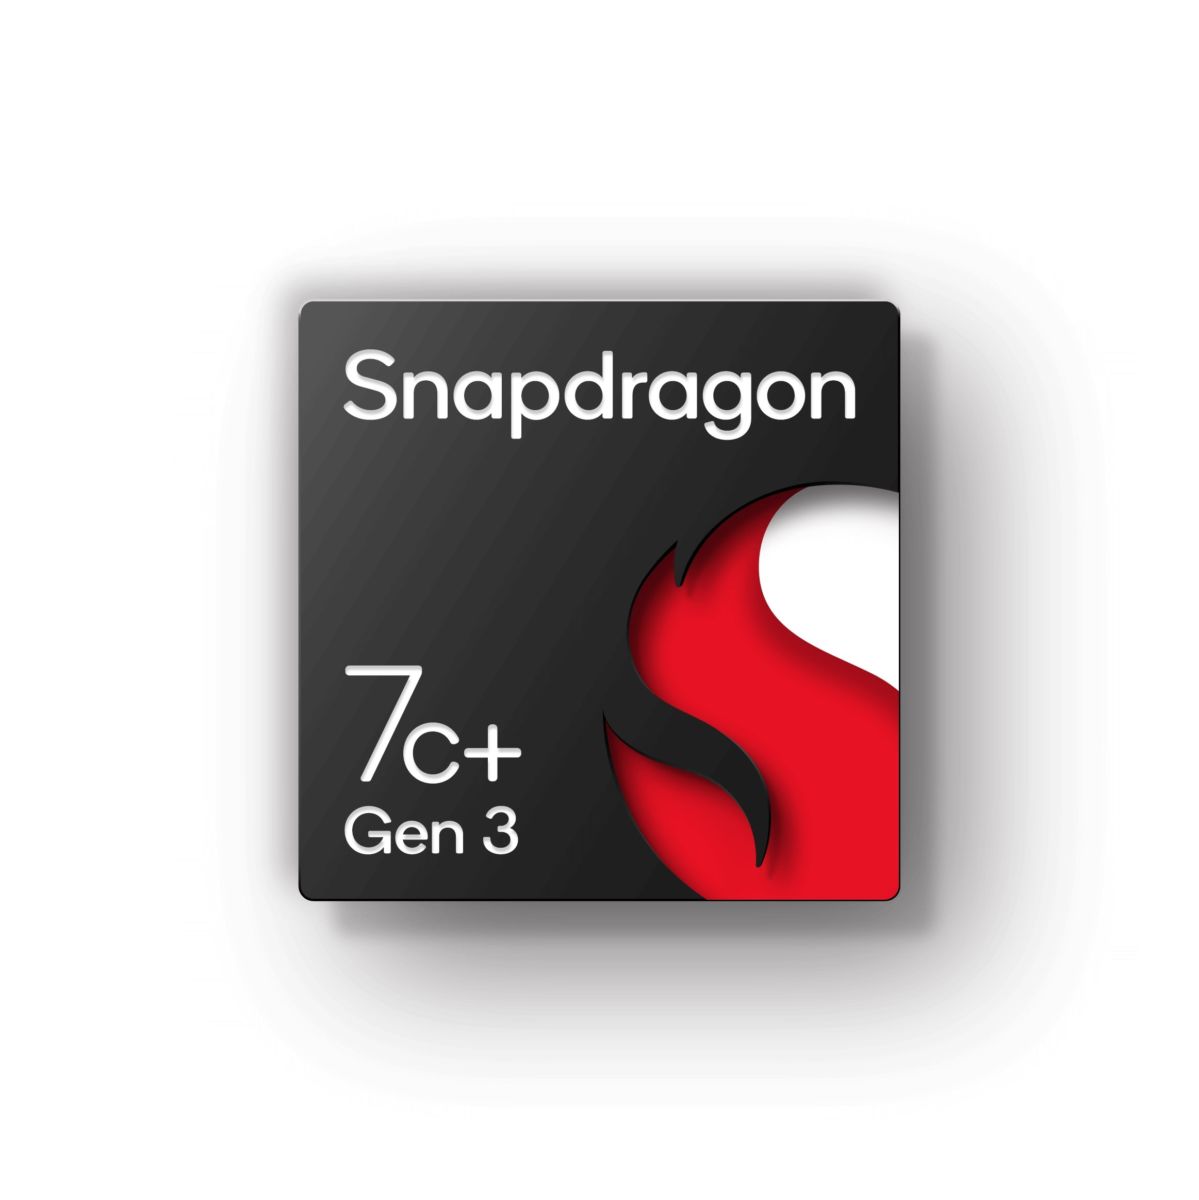 Snapdragon 7c+ Gen 3: Nâng cao cấp độ của máy tính phân khúc bình dân